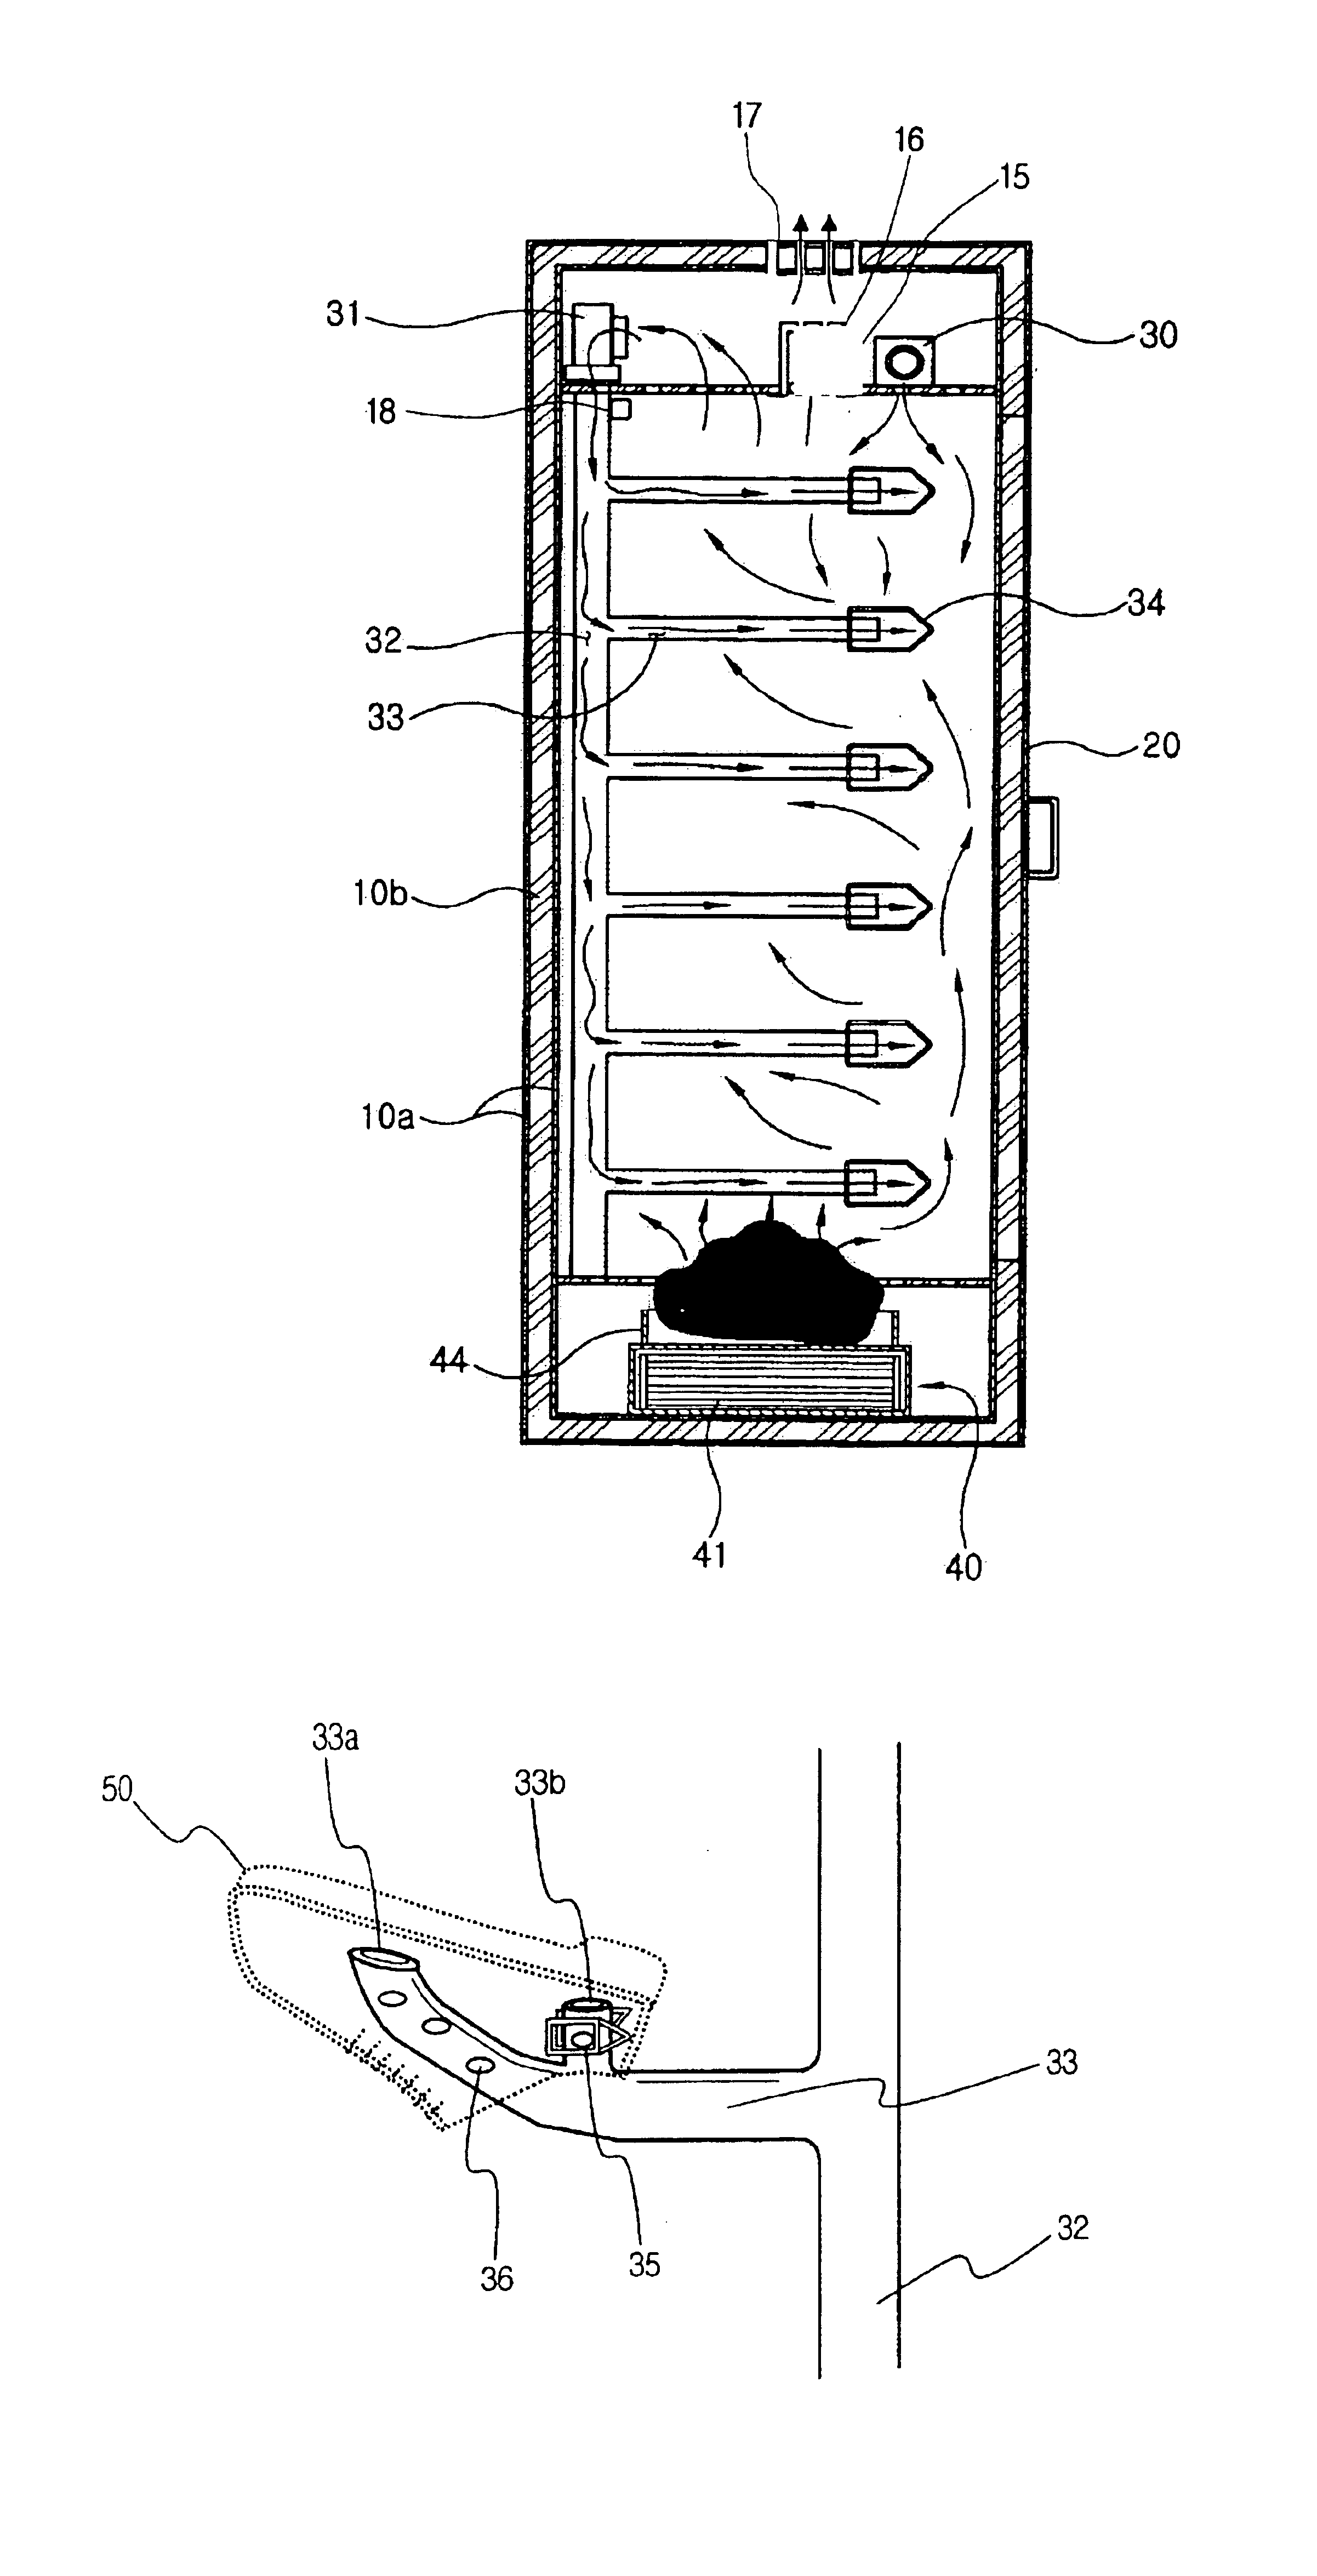 Shoe drying apparatus